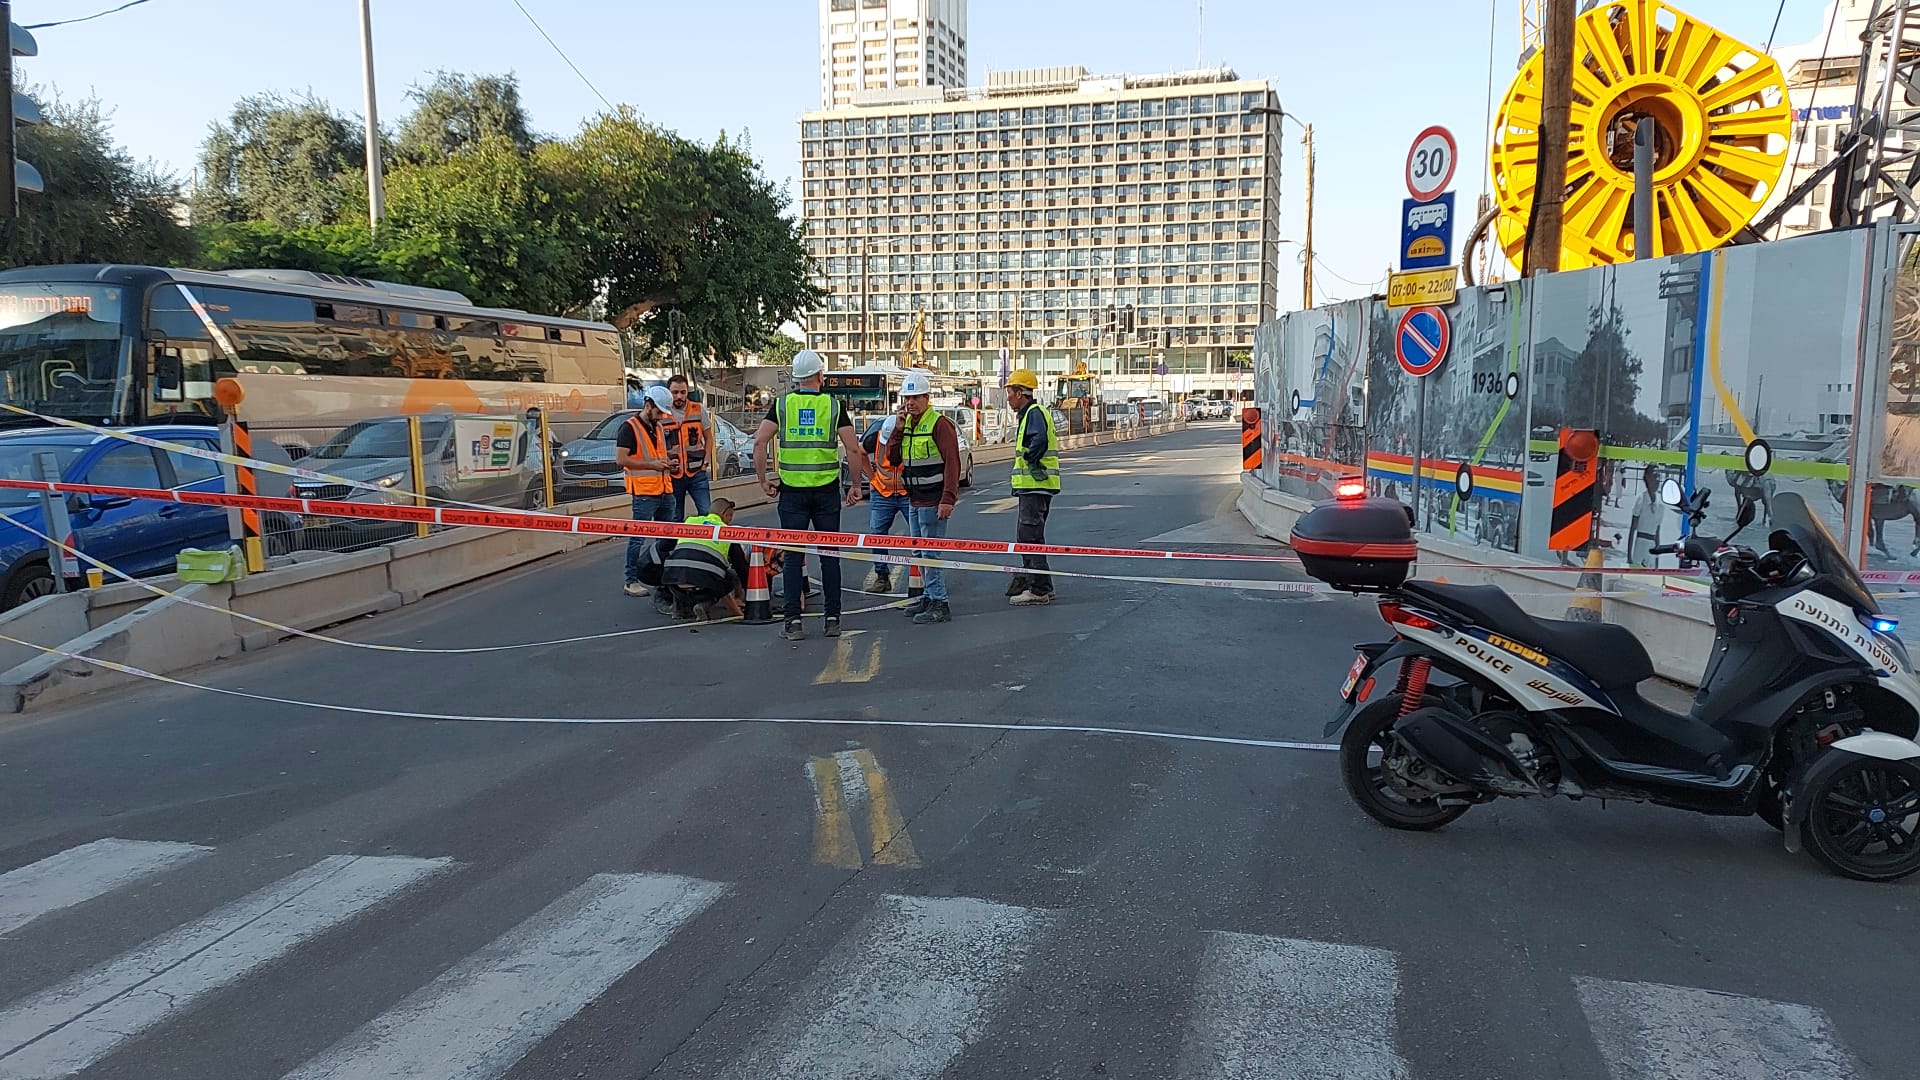 שוב בולען בתל אביב: שני נתיבים נסגרו לתנועה ברחוב אבן גבירול פינת צייטלין